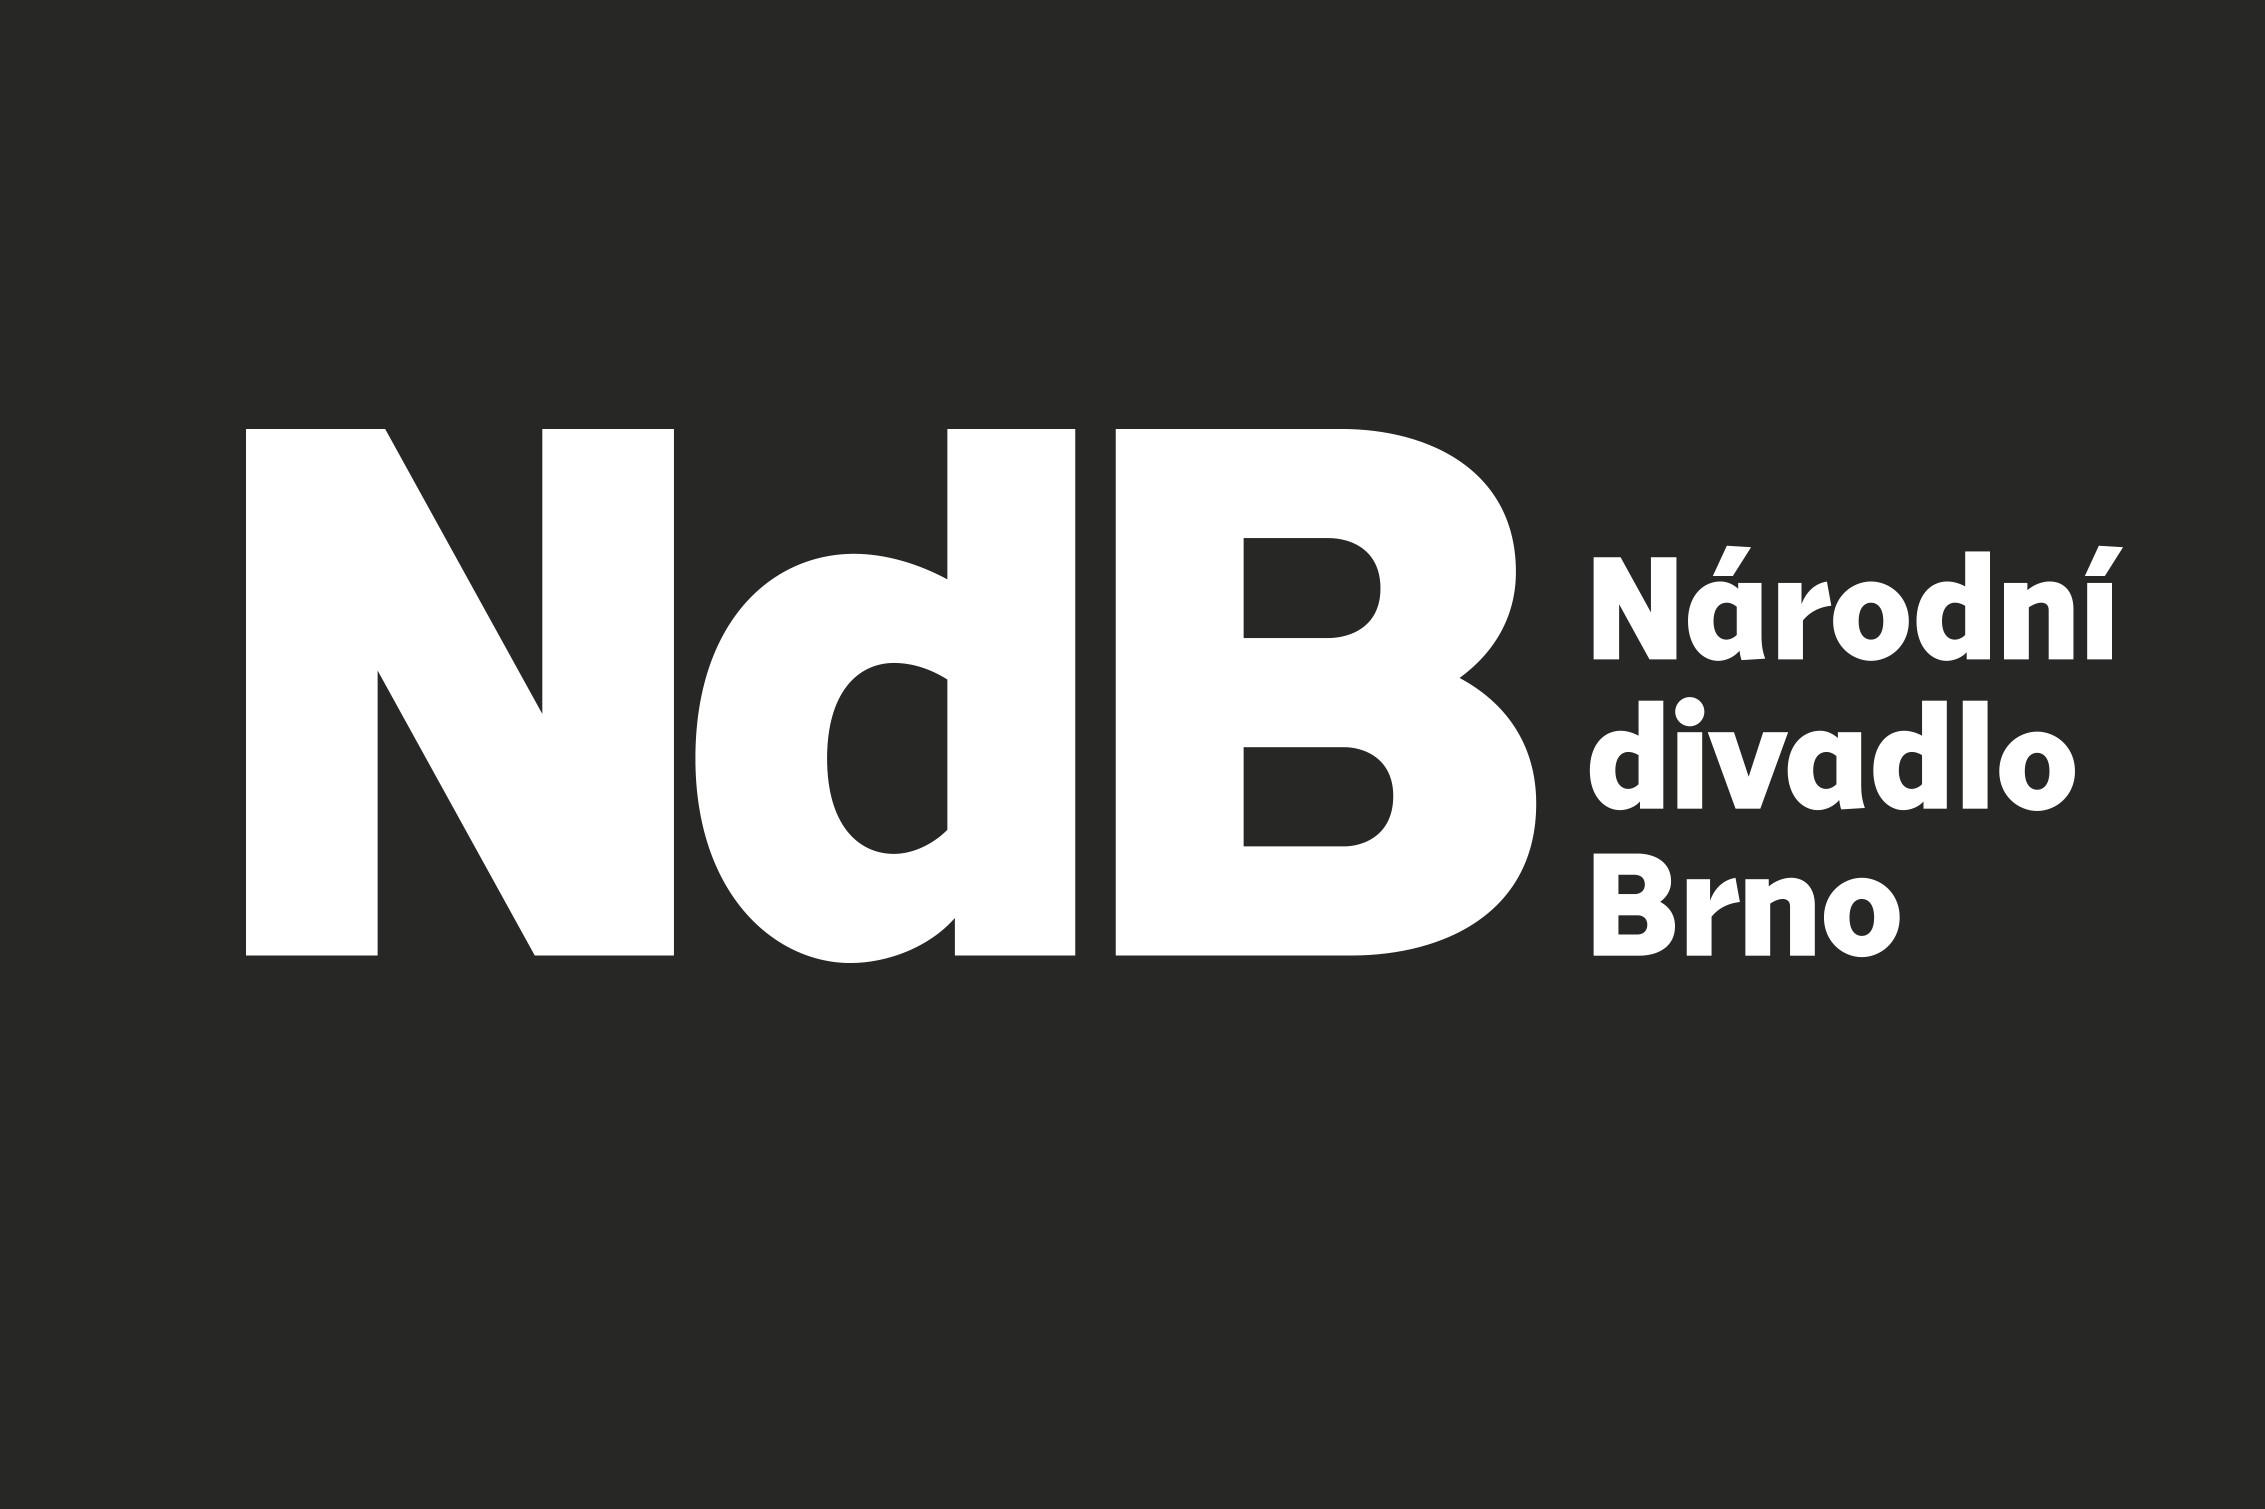 Národní divadlo Brno hledá referenta marketingu pro balet NdB - OperaPLUS